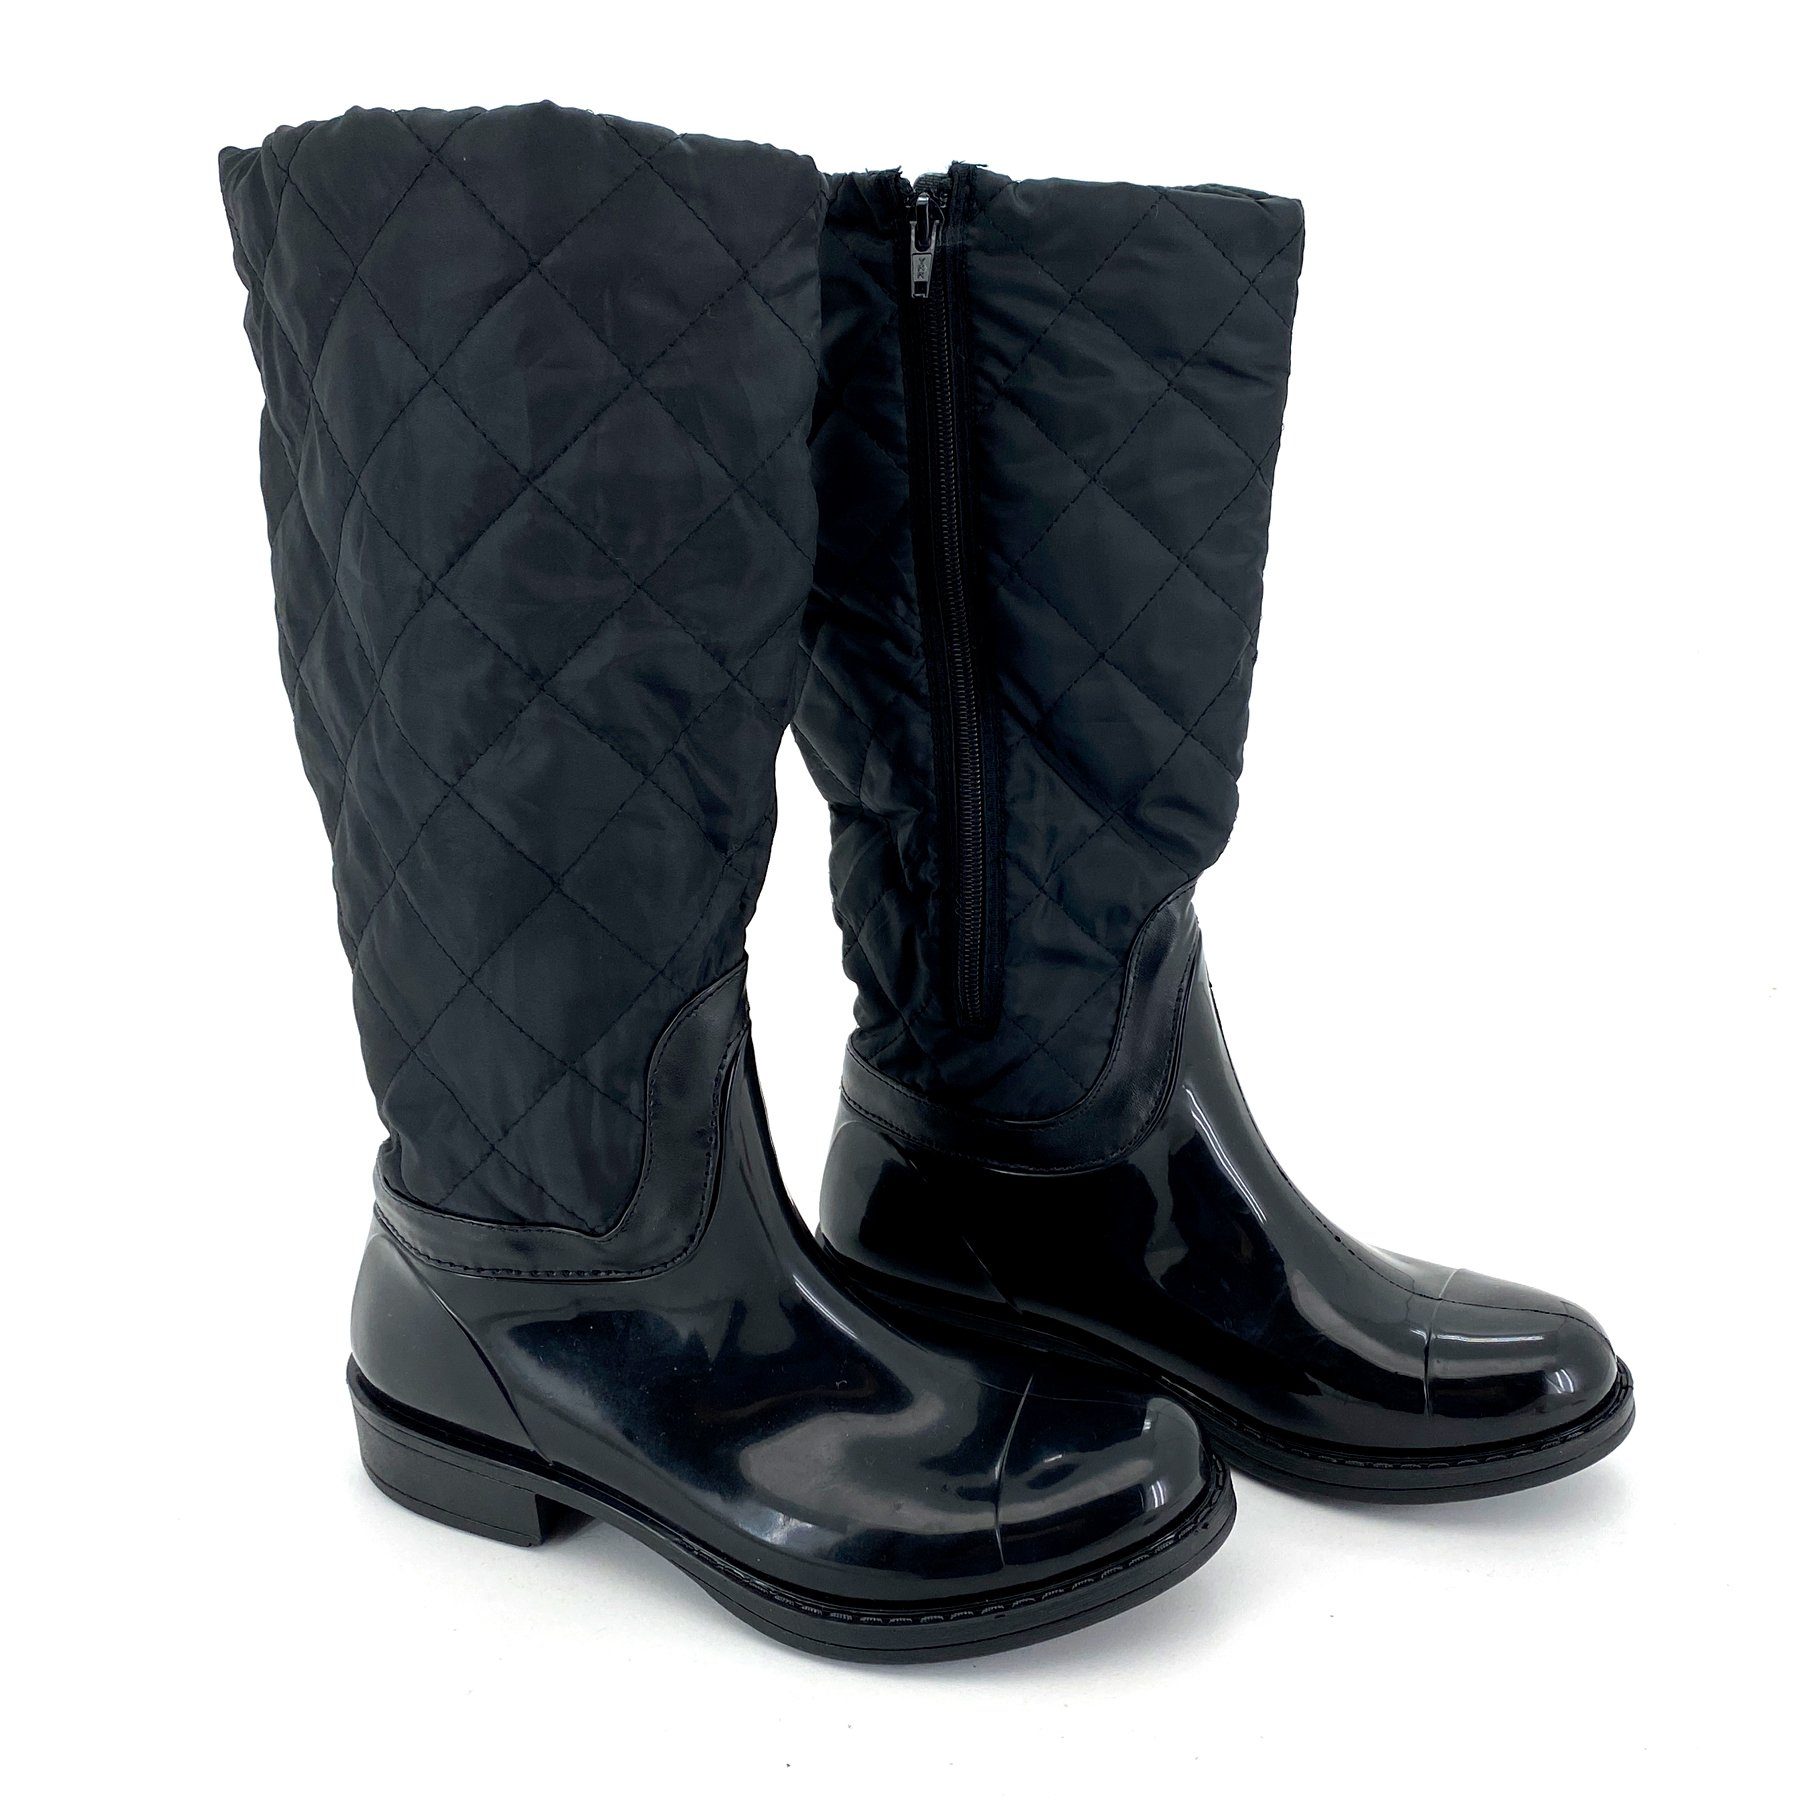 heimtexland Gummistiefel Daunen Stiefel Hochschaft Trend Boots Gummistiefel (Typ880) gesteppt I wasserdicht I Damen Mädchen Regenstiefel Schwarz-Matt